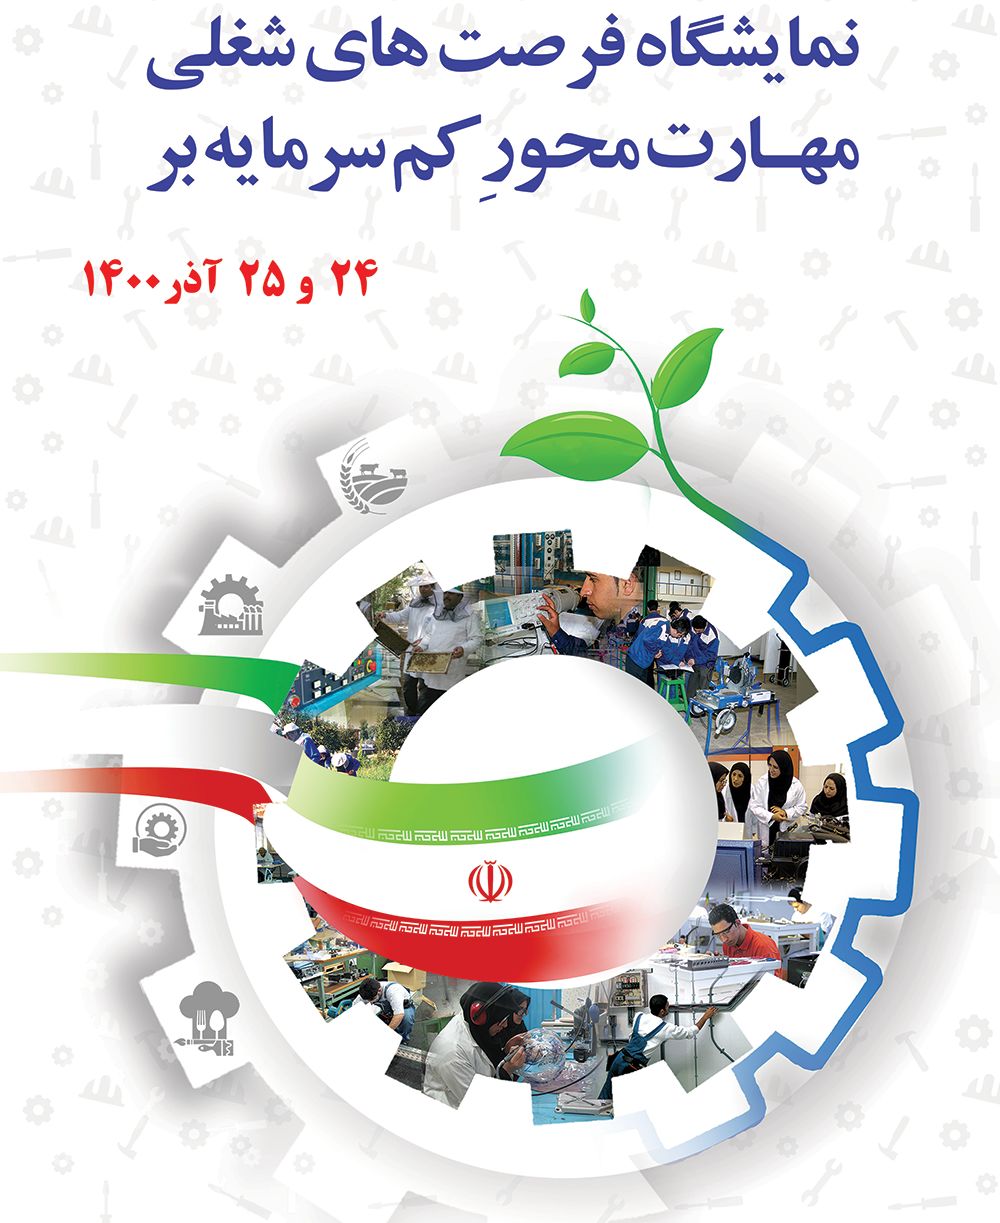 برگزاری نمایشگاه فرصت های شغلی مهارت محورِ کم سرمایه در مرکز آموزش فنی و حرفه ای زینبیه اصفهان